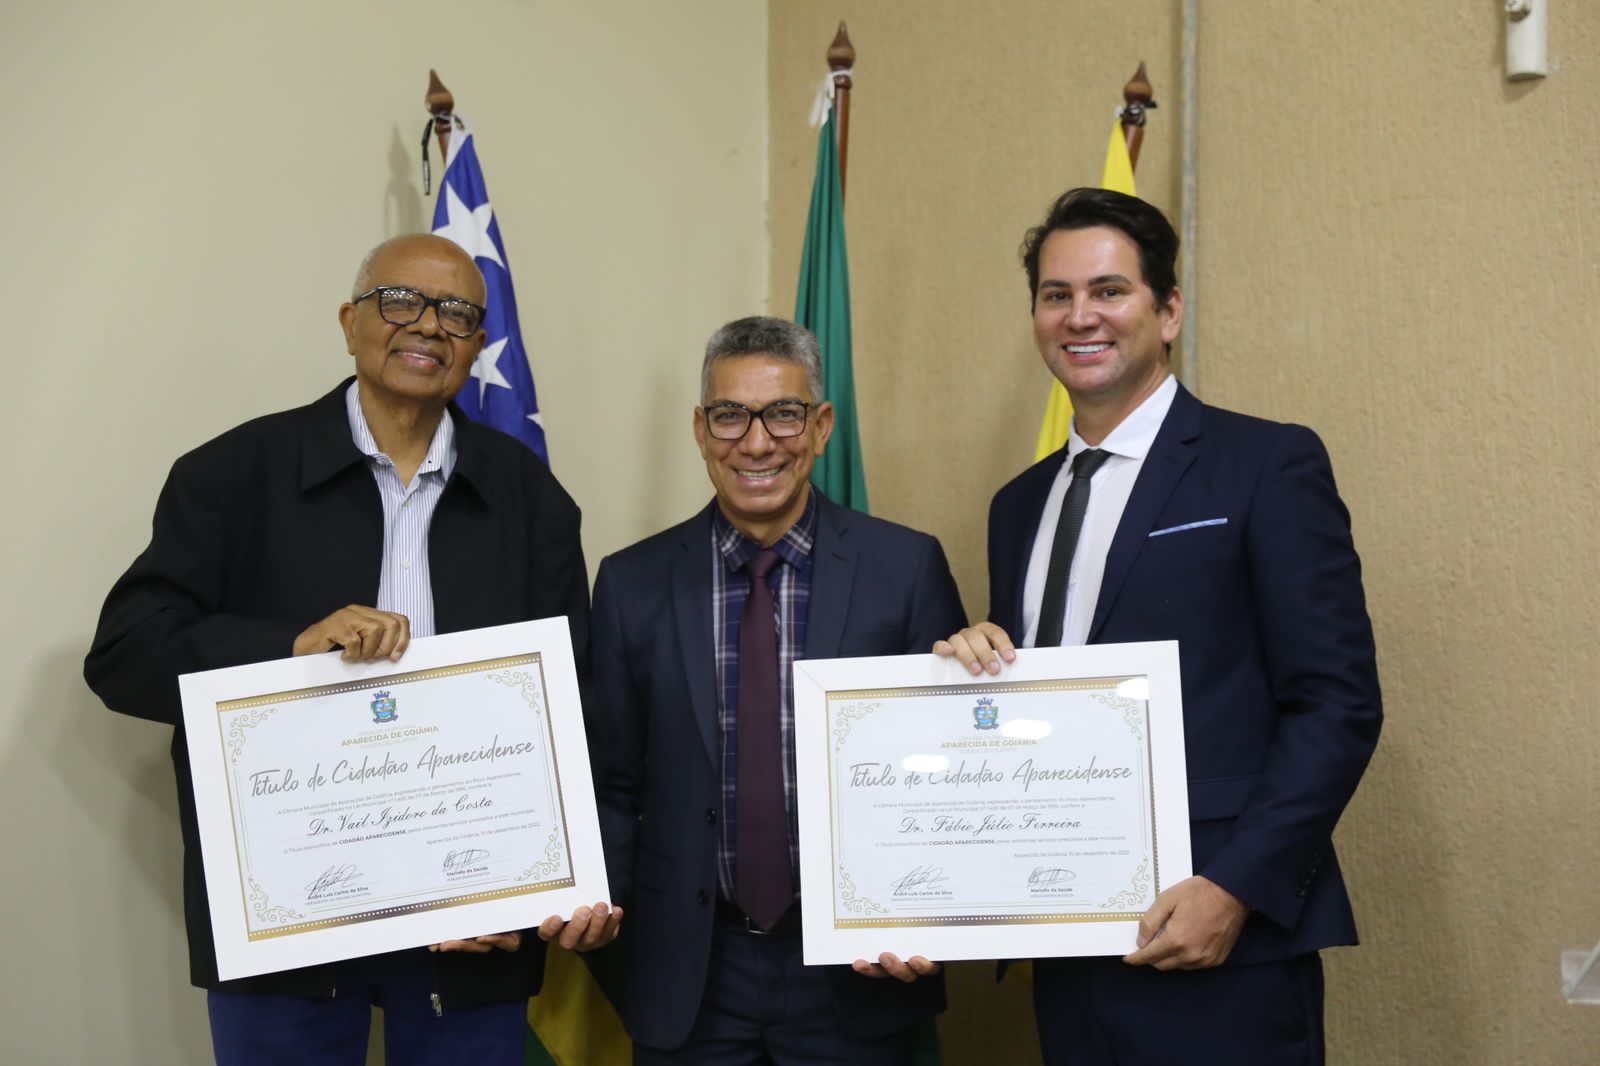 Doutores Fábio Julio e Vail Izidoro recebem títulos de cidadãos aparecidenses em Sessão Solene